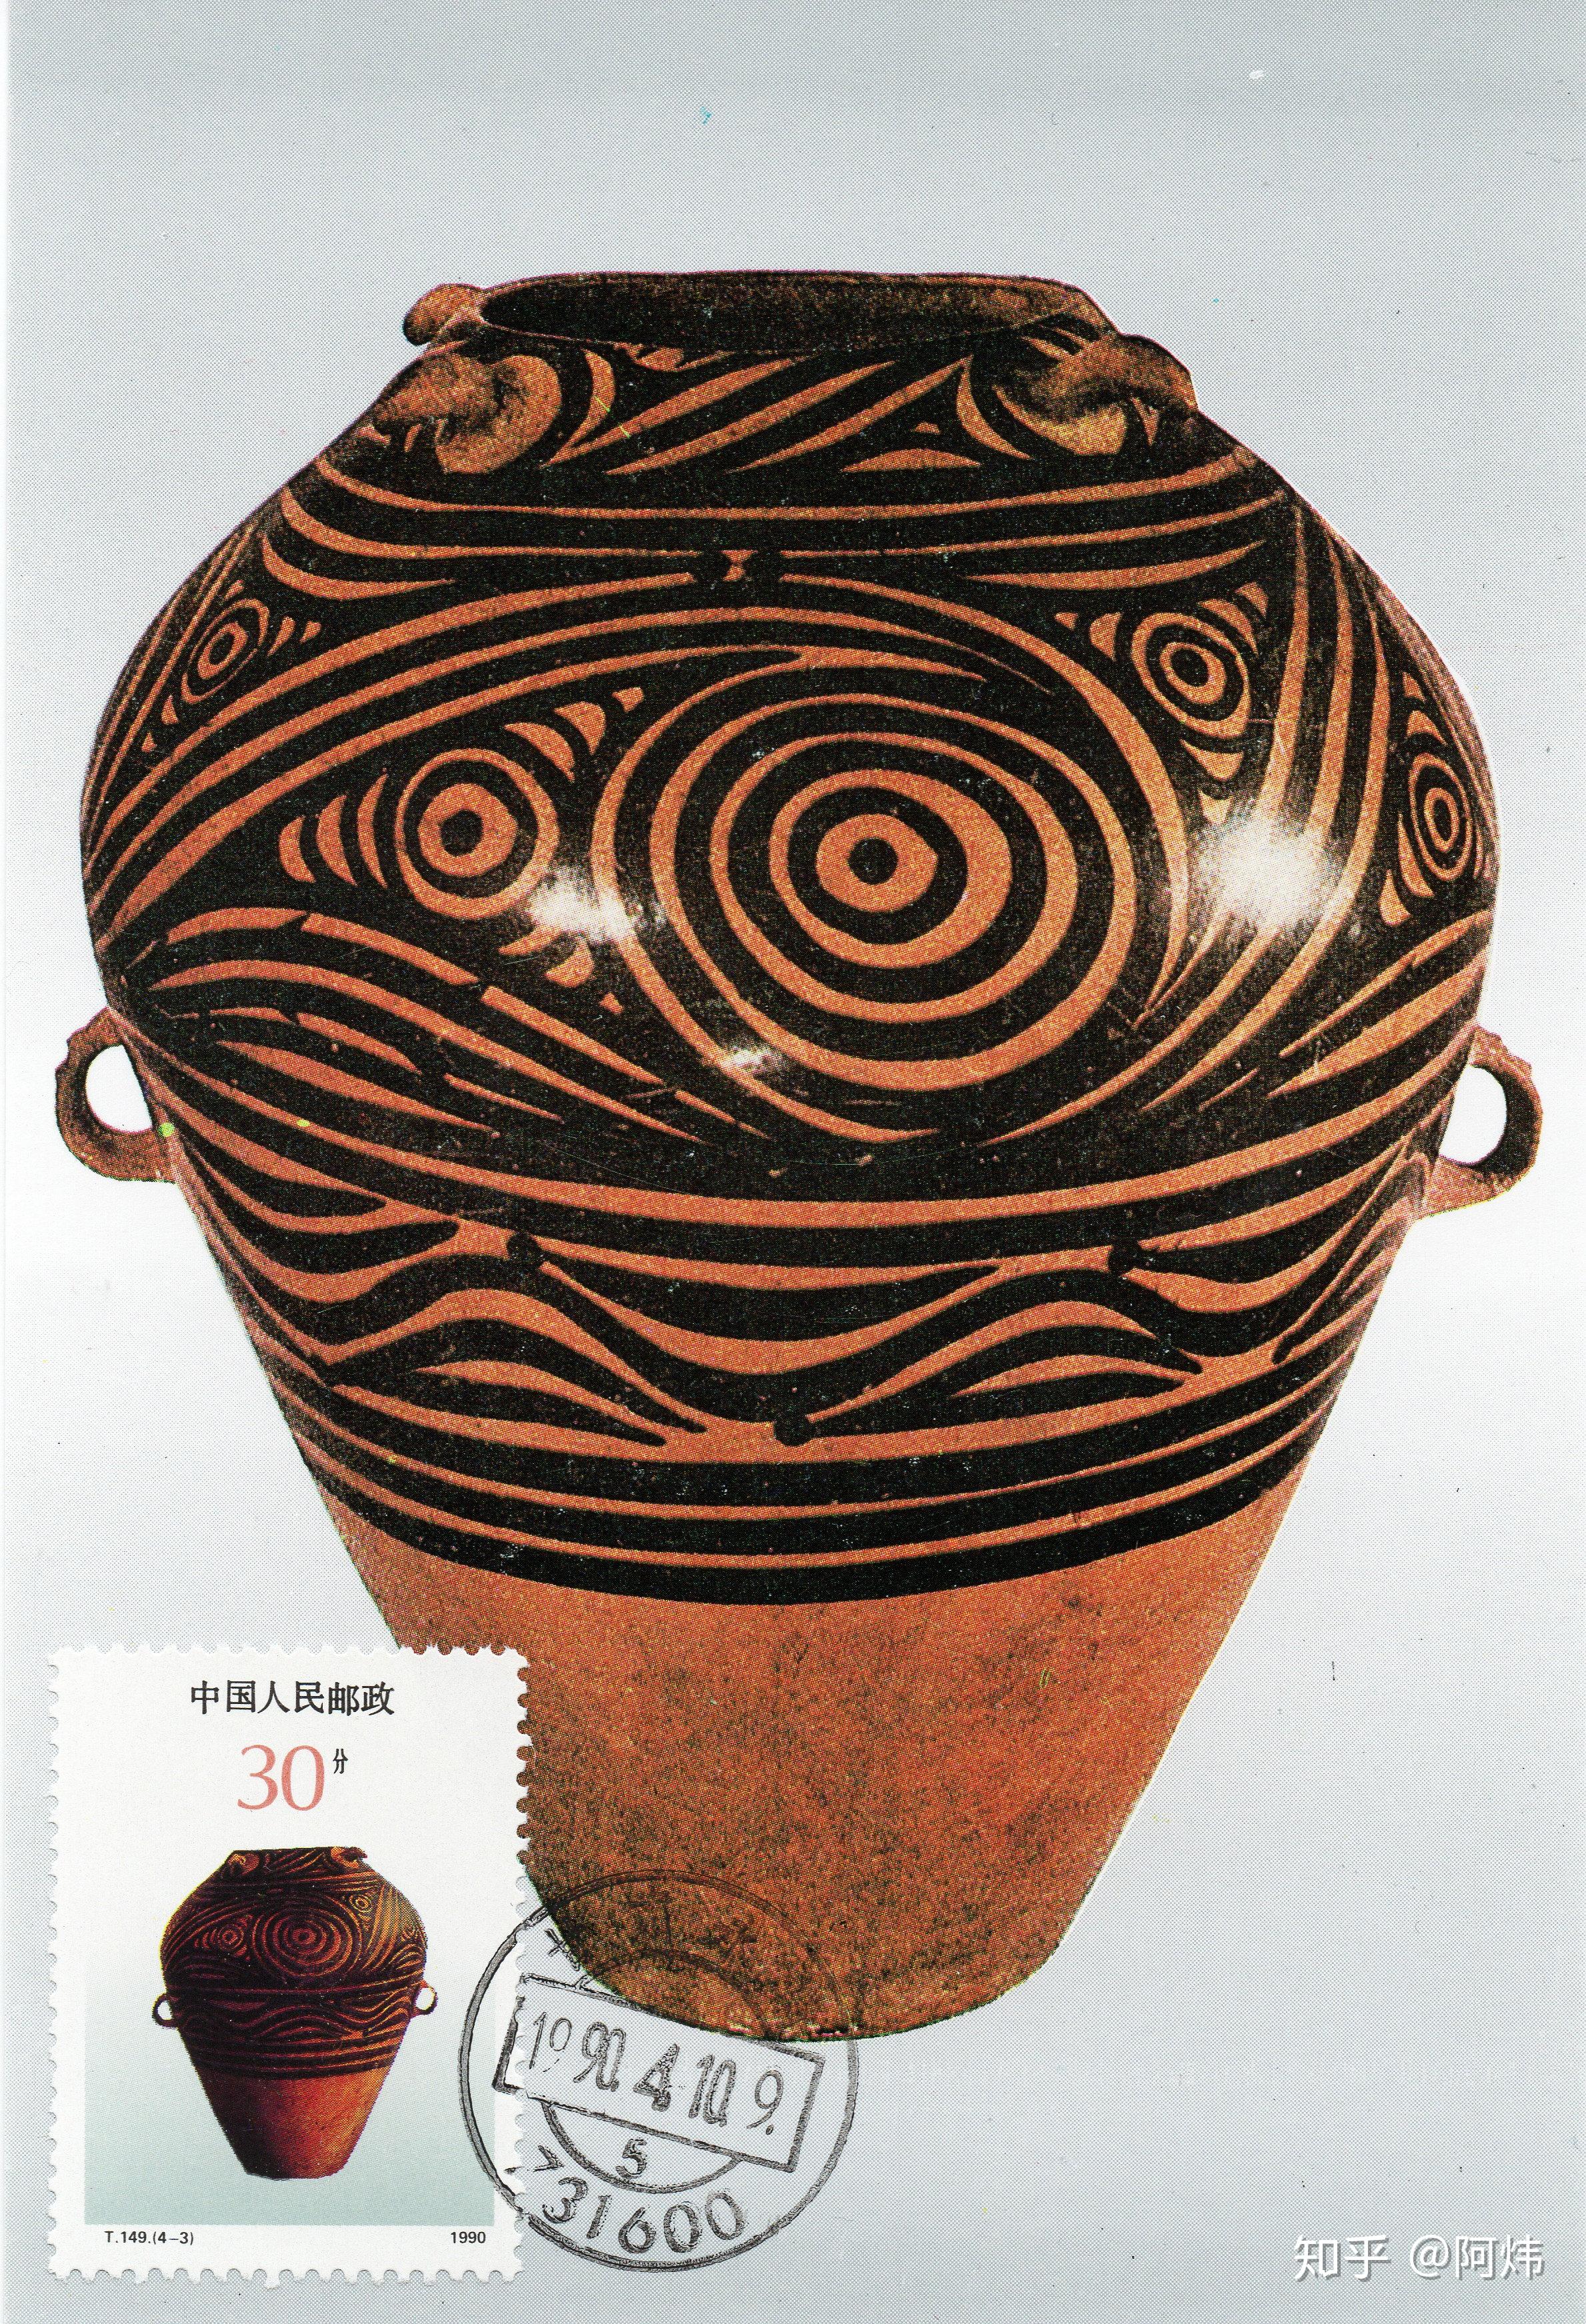 这三种彩陶类型是一脉相承发展的,在造型和纹饰上,有其共同的特征,但